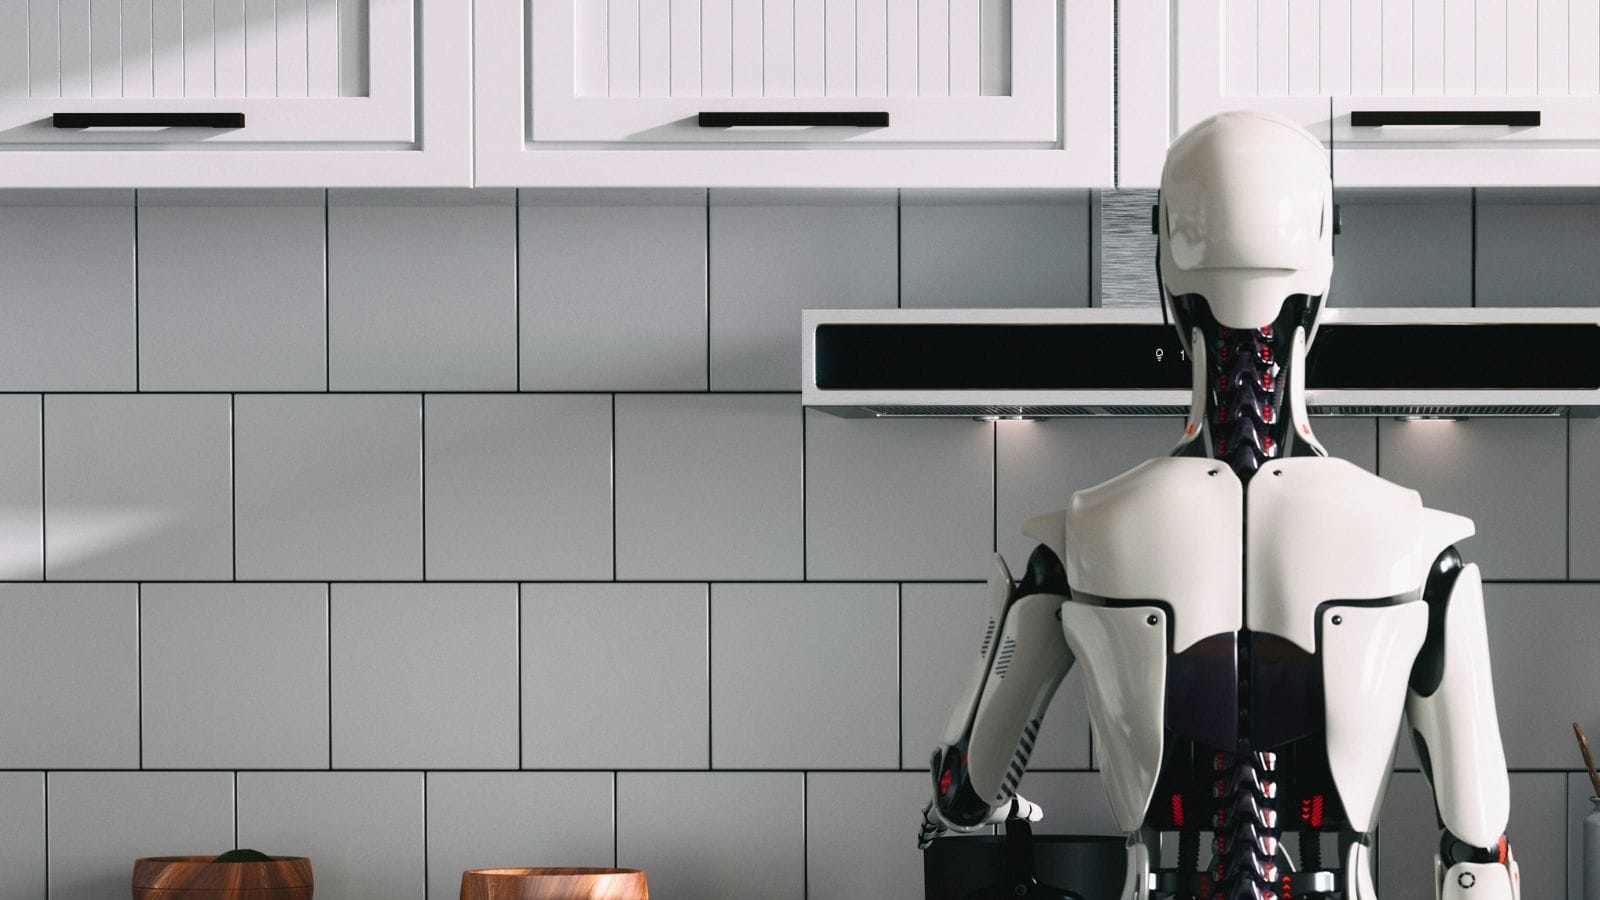 Robot nel lavoro: migliore umore e salari più alti per gli impiegati umani